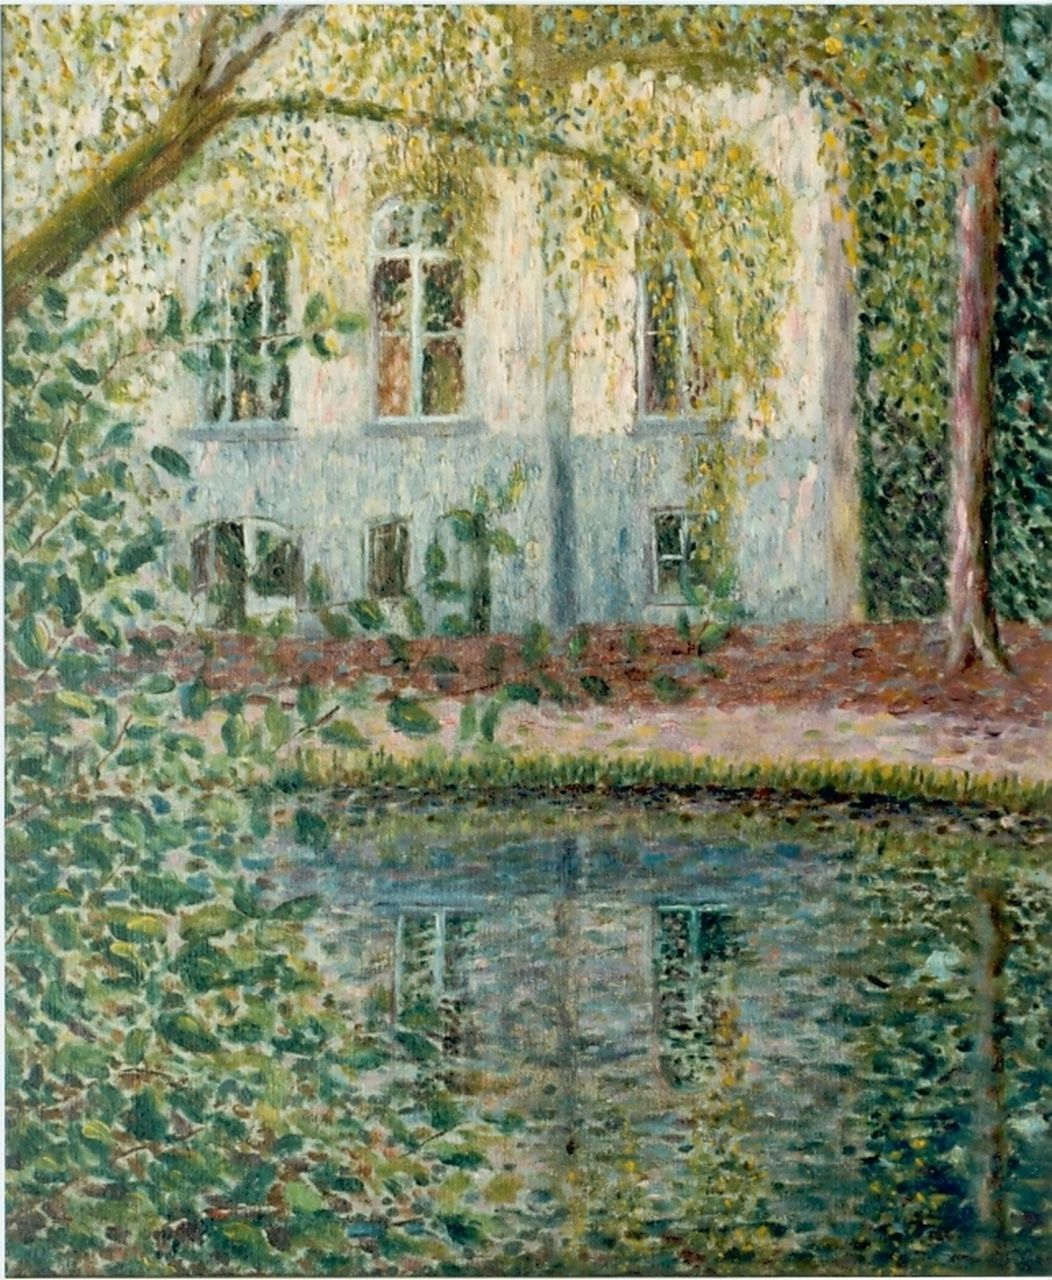 Niekerk M.J.  | 'Maurits' Joseph Niekerk, A view of a house, Öl auf Leinwand 46,0 x 38,0 cm